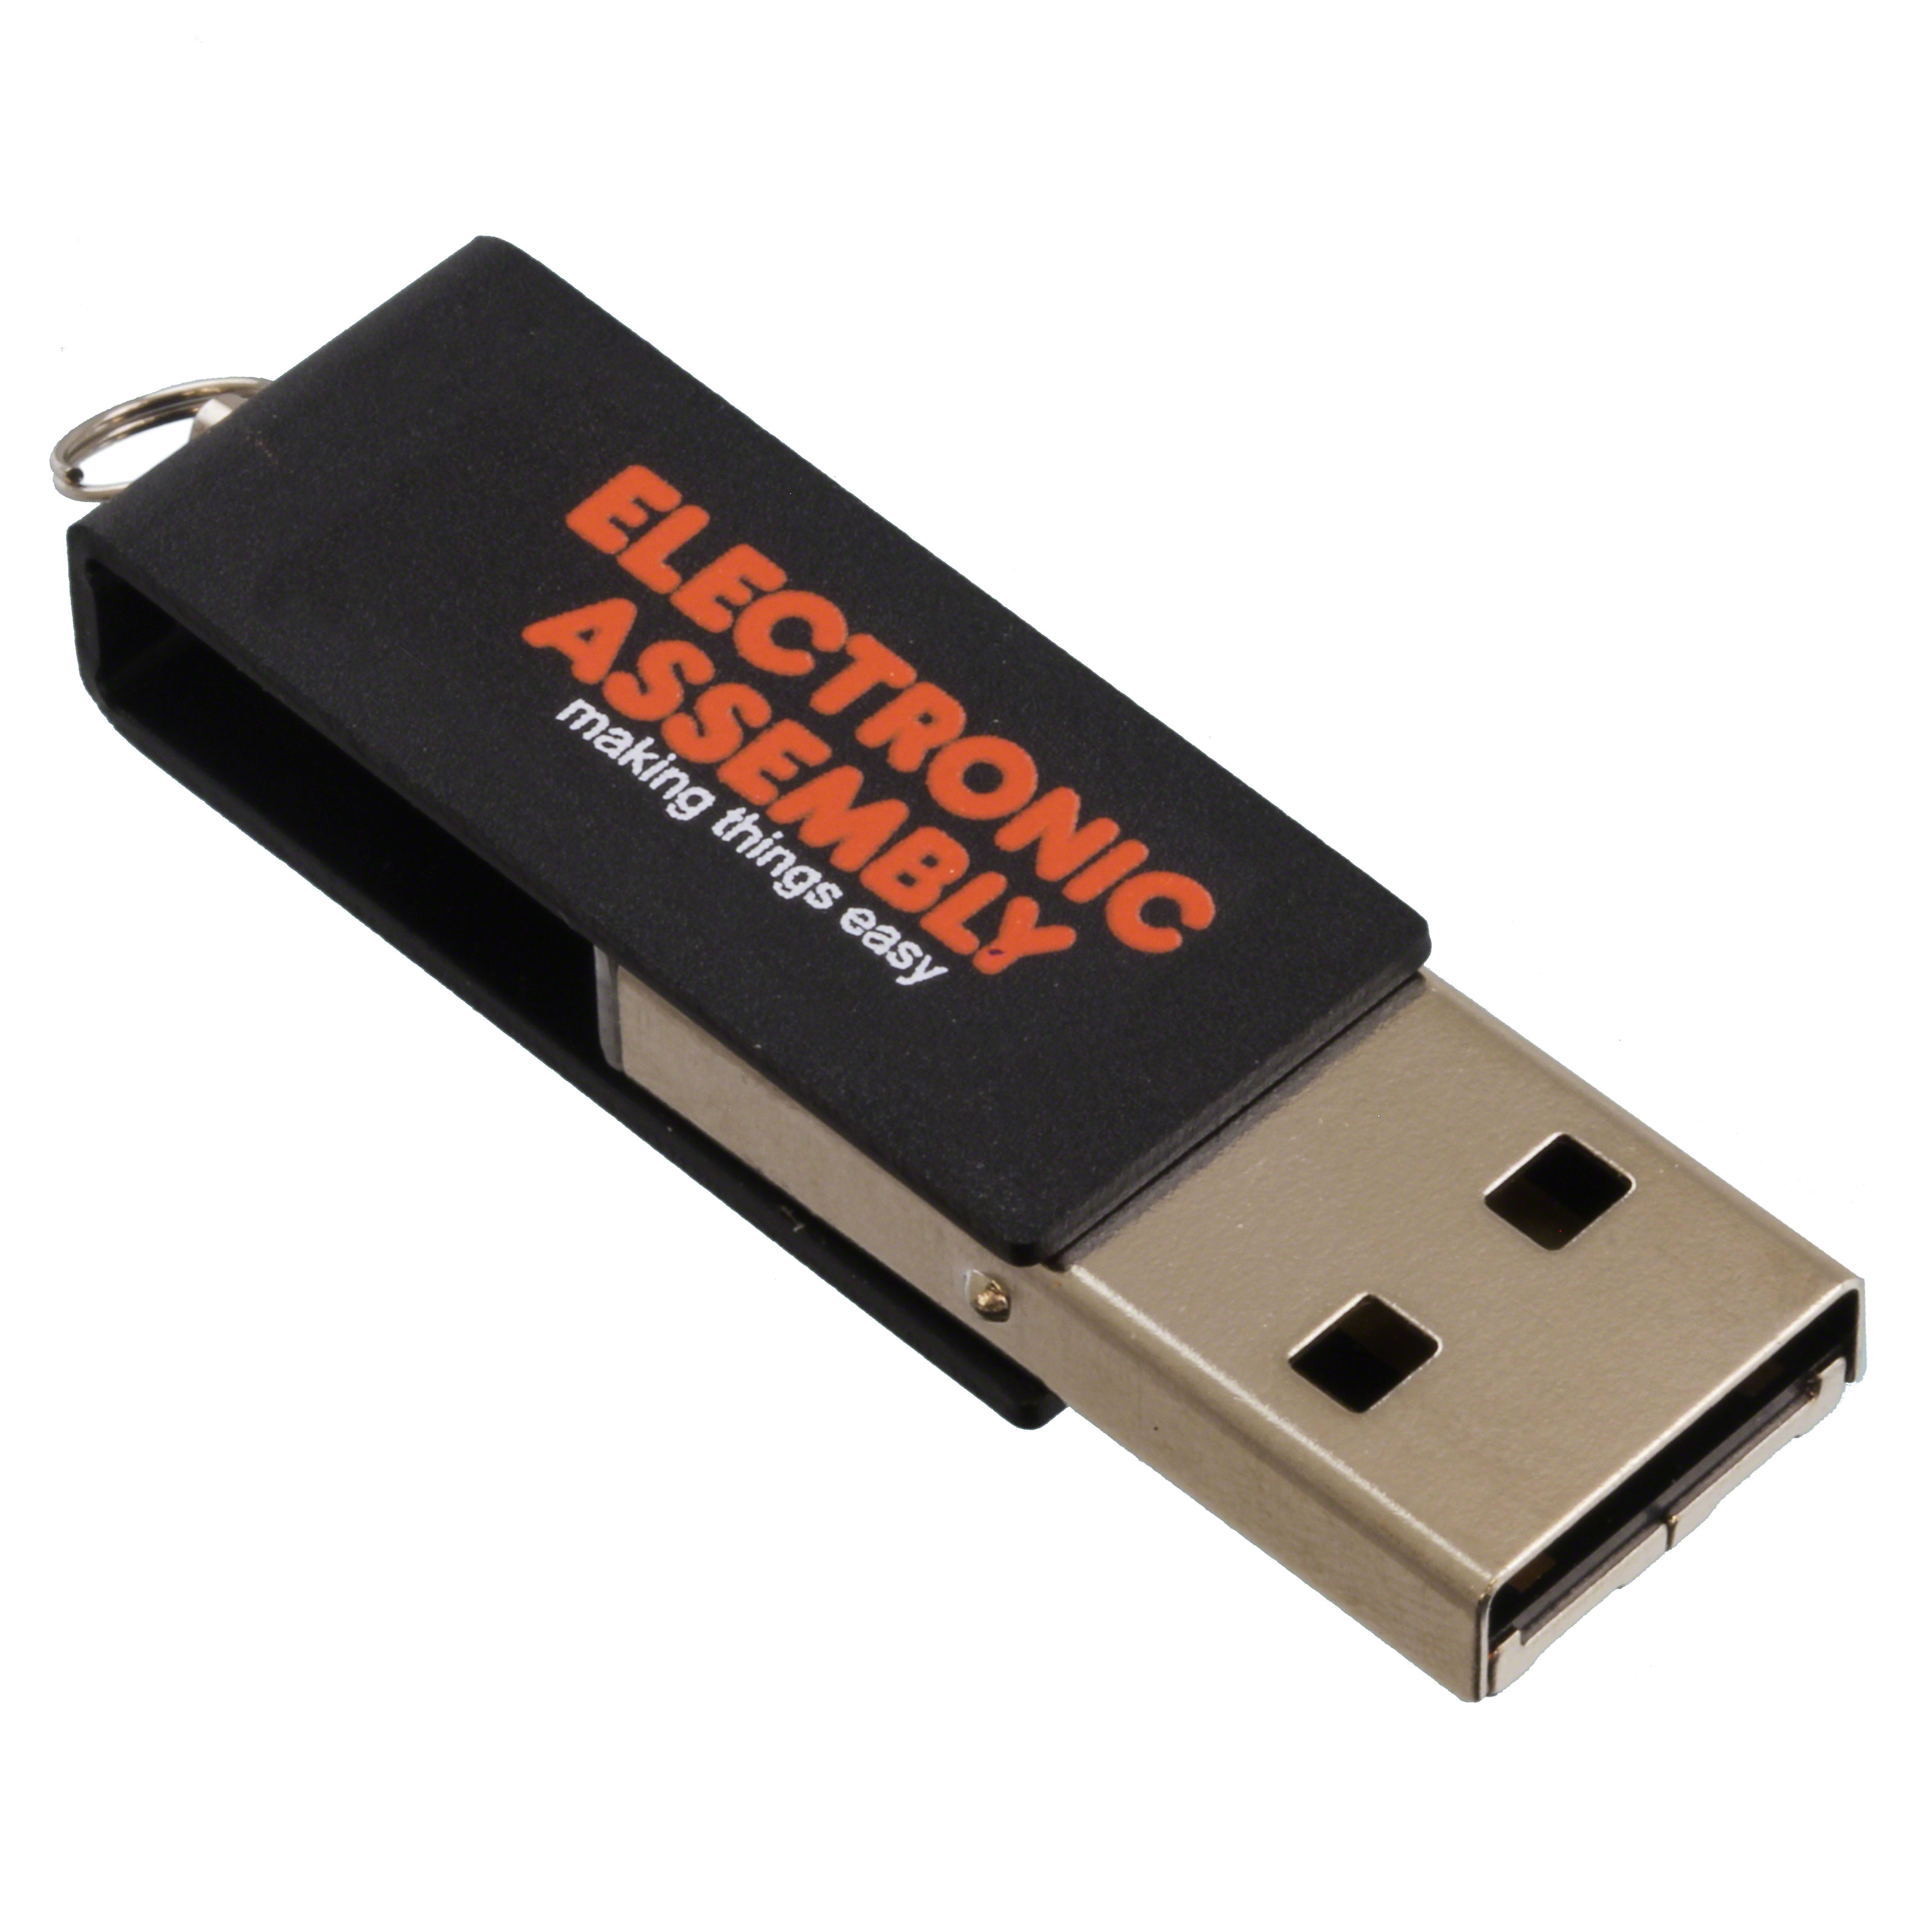 【EA USBSTICK-FONT】USB CHARACTER SET AND FONT EDITO